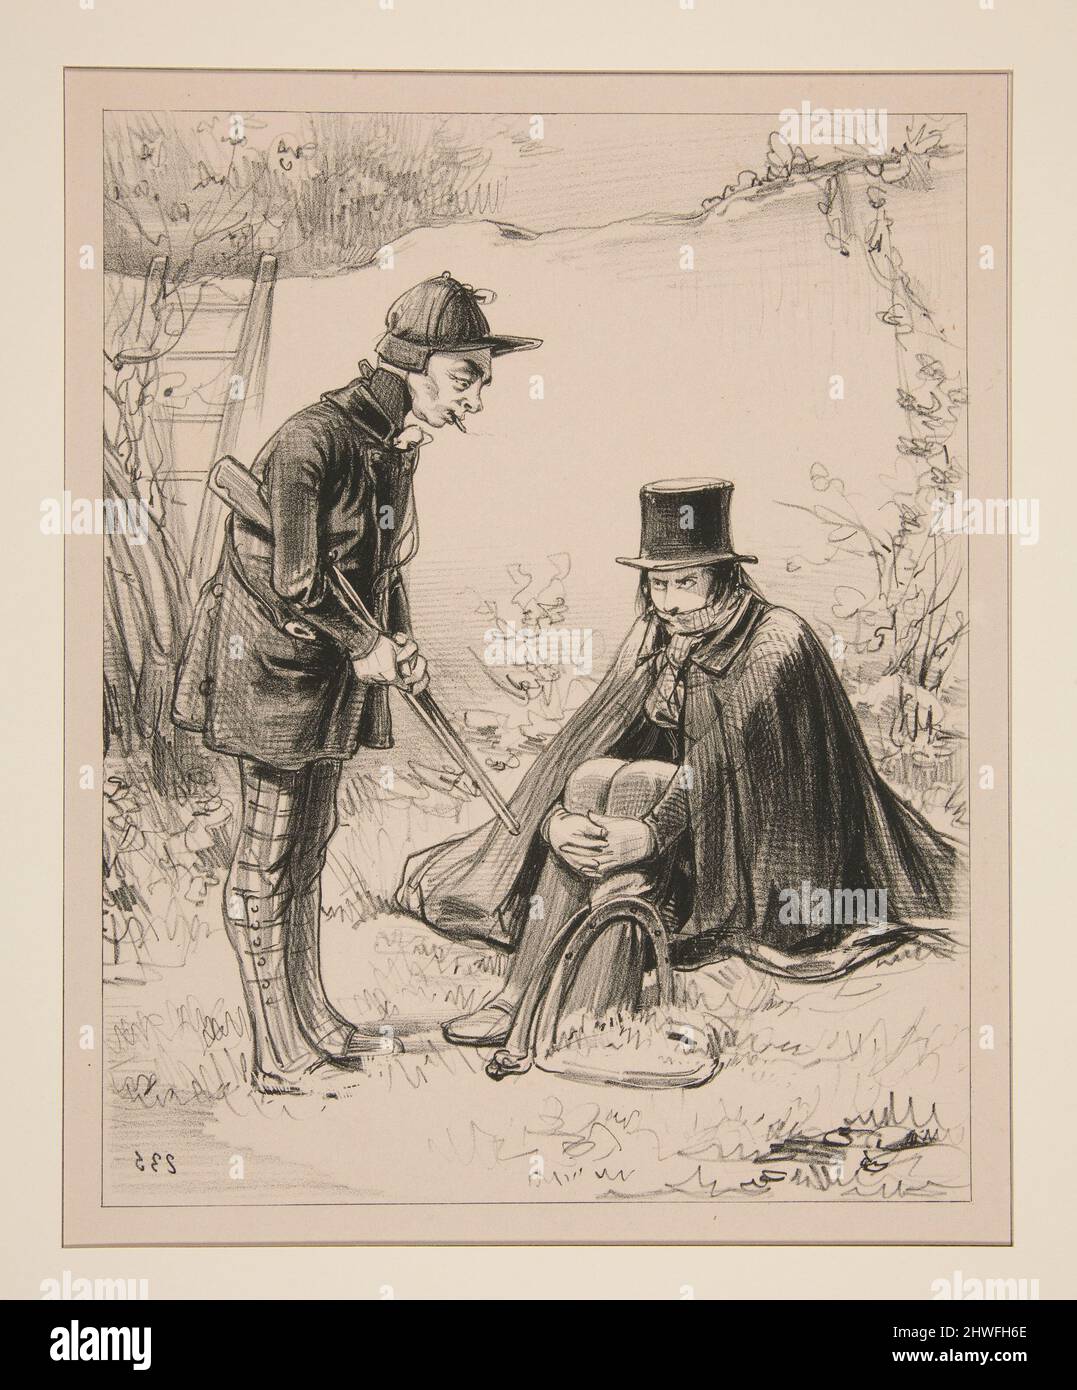 Adrien, jeune homme du voisinage, s’est pris la jambe cette nuit…. Artista: Paul Gavarni, francese, 1804–1866 Foto Stock